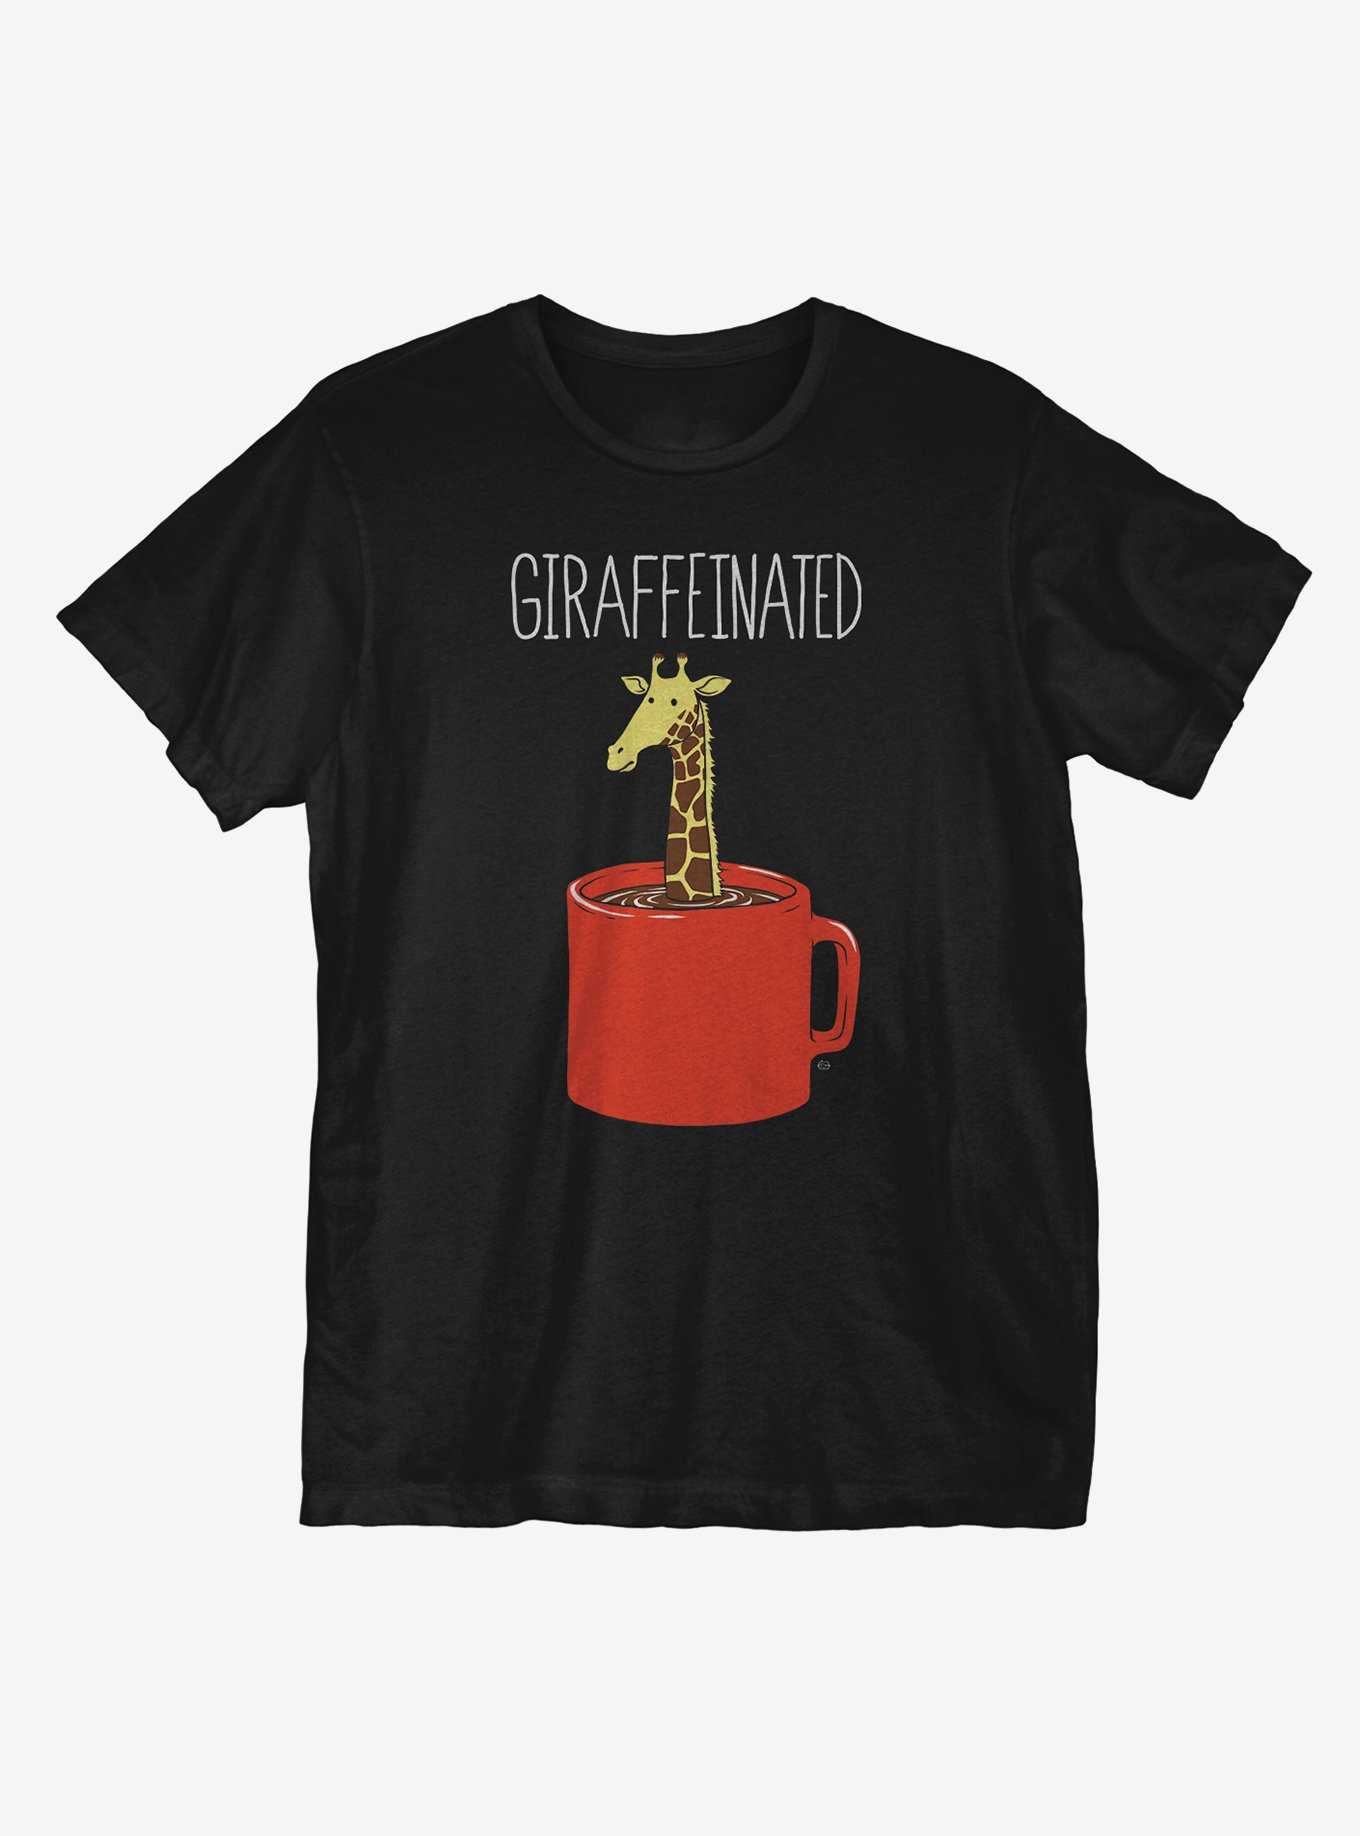 Giraffeinated T-Shirt, , hi-res